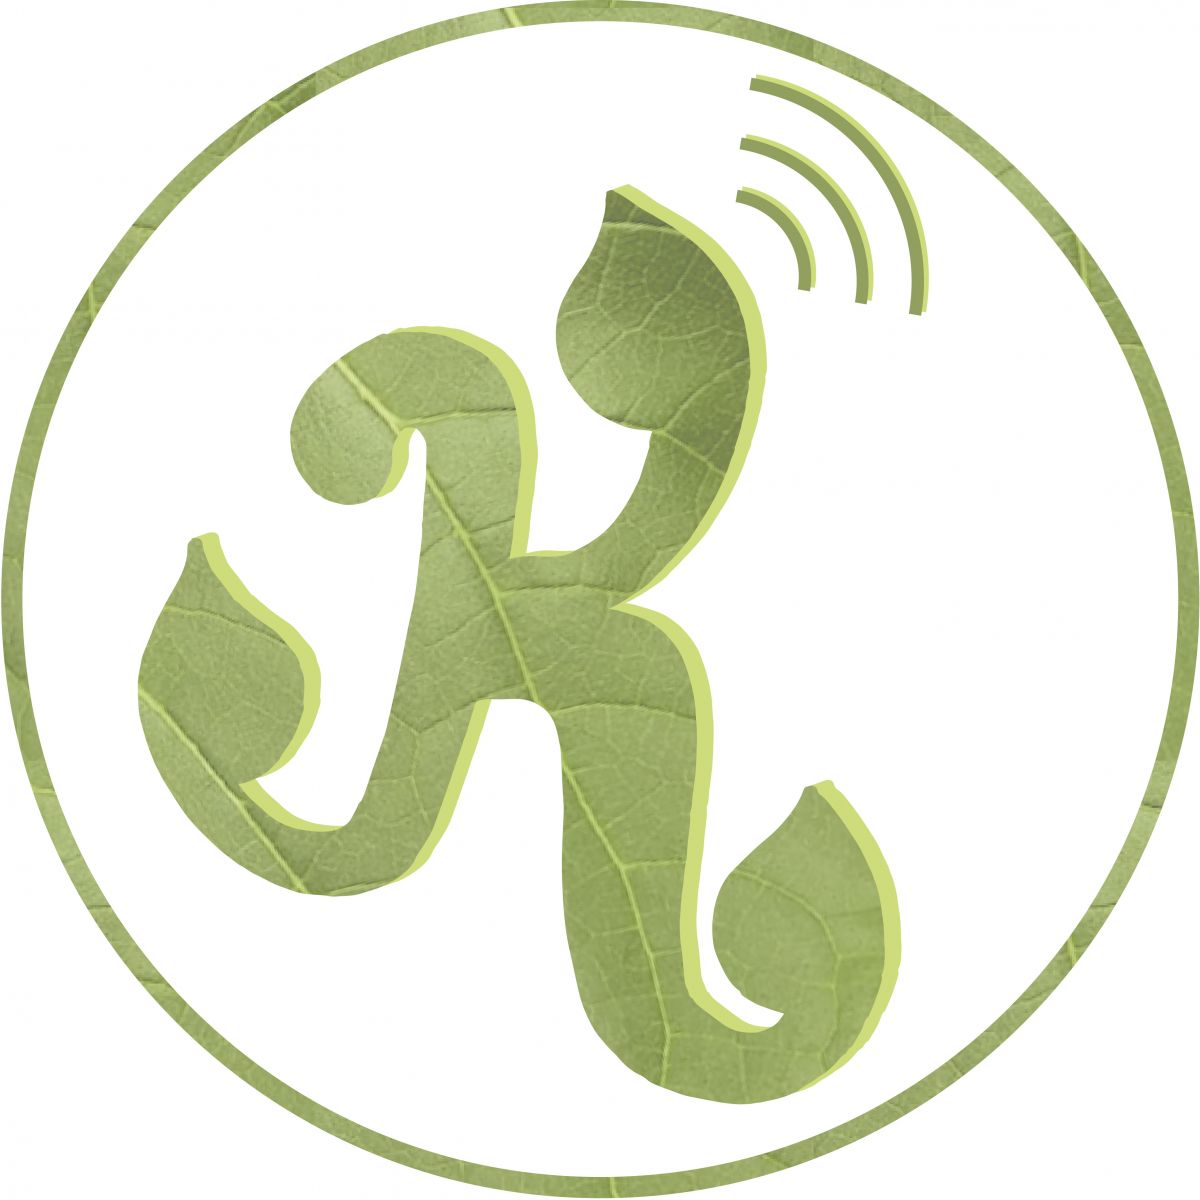 Seit März 2020 gibt es den Wissenschafts-Podcast "KRAUTNAH". Am 08.08. wird die nächste Folge veröffentlicht.
